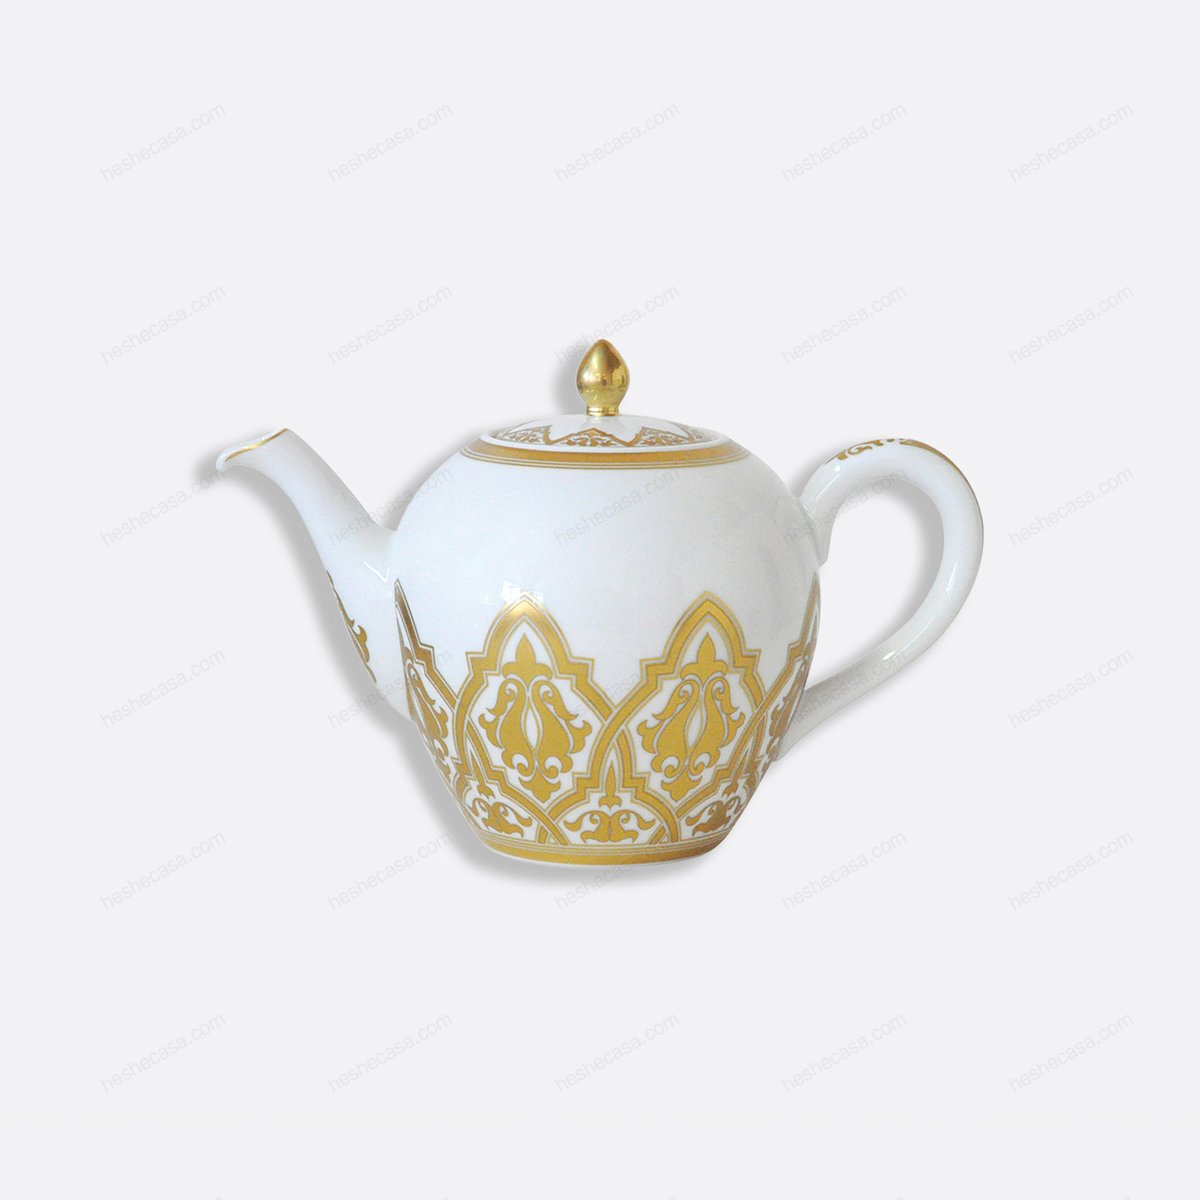 Venise Teapot 12 Cups 42 Oz 茶壶